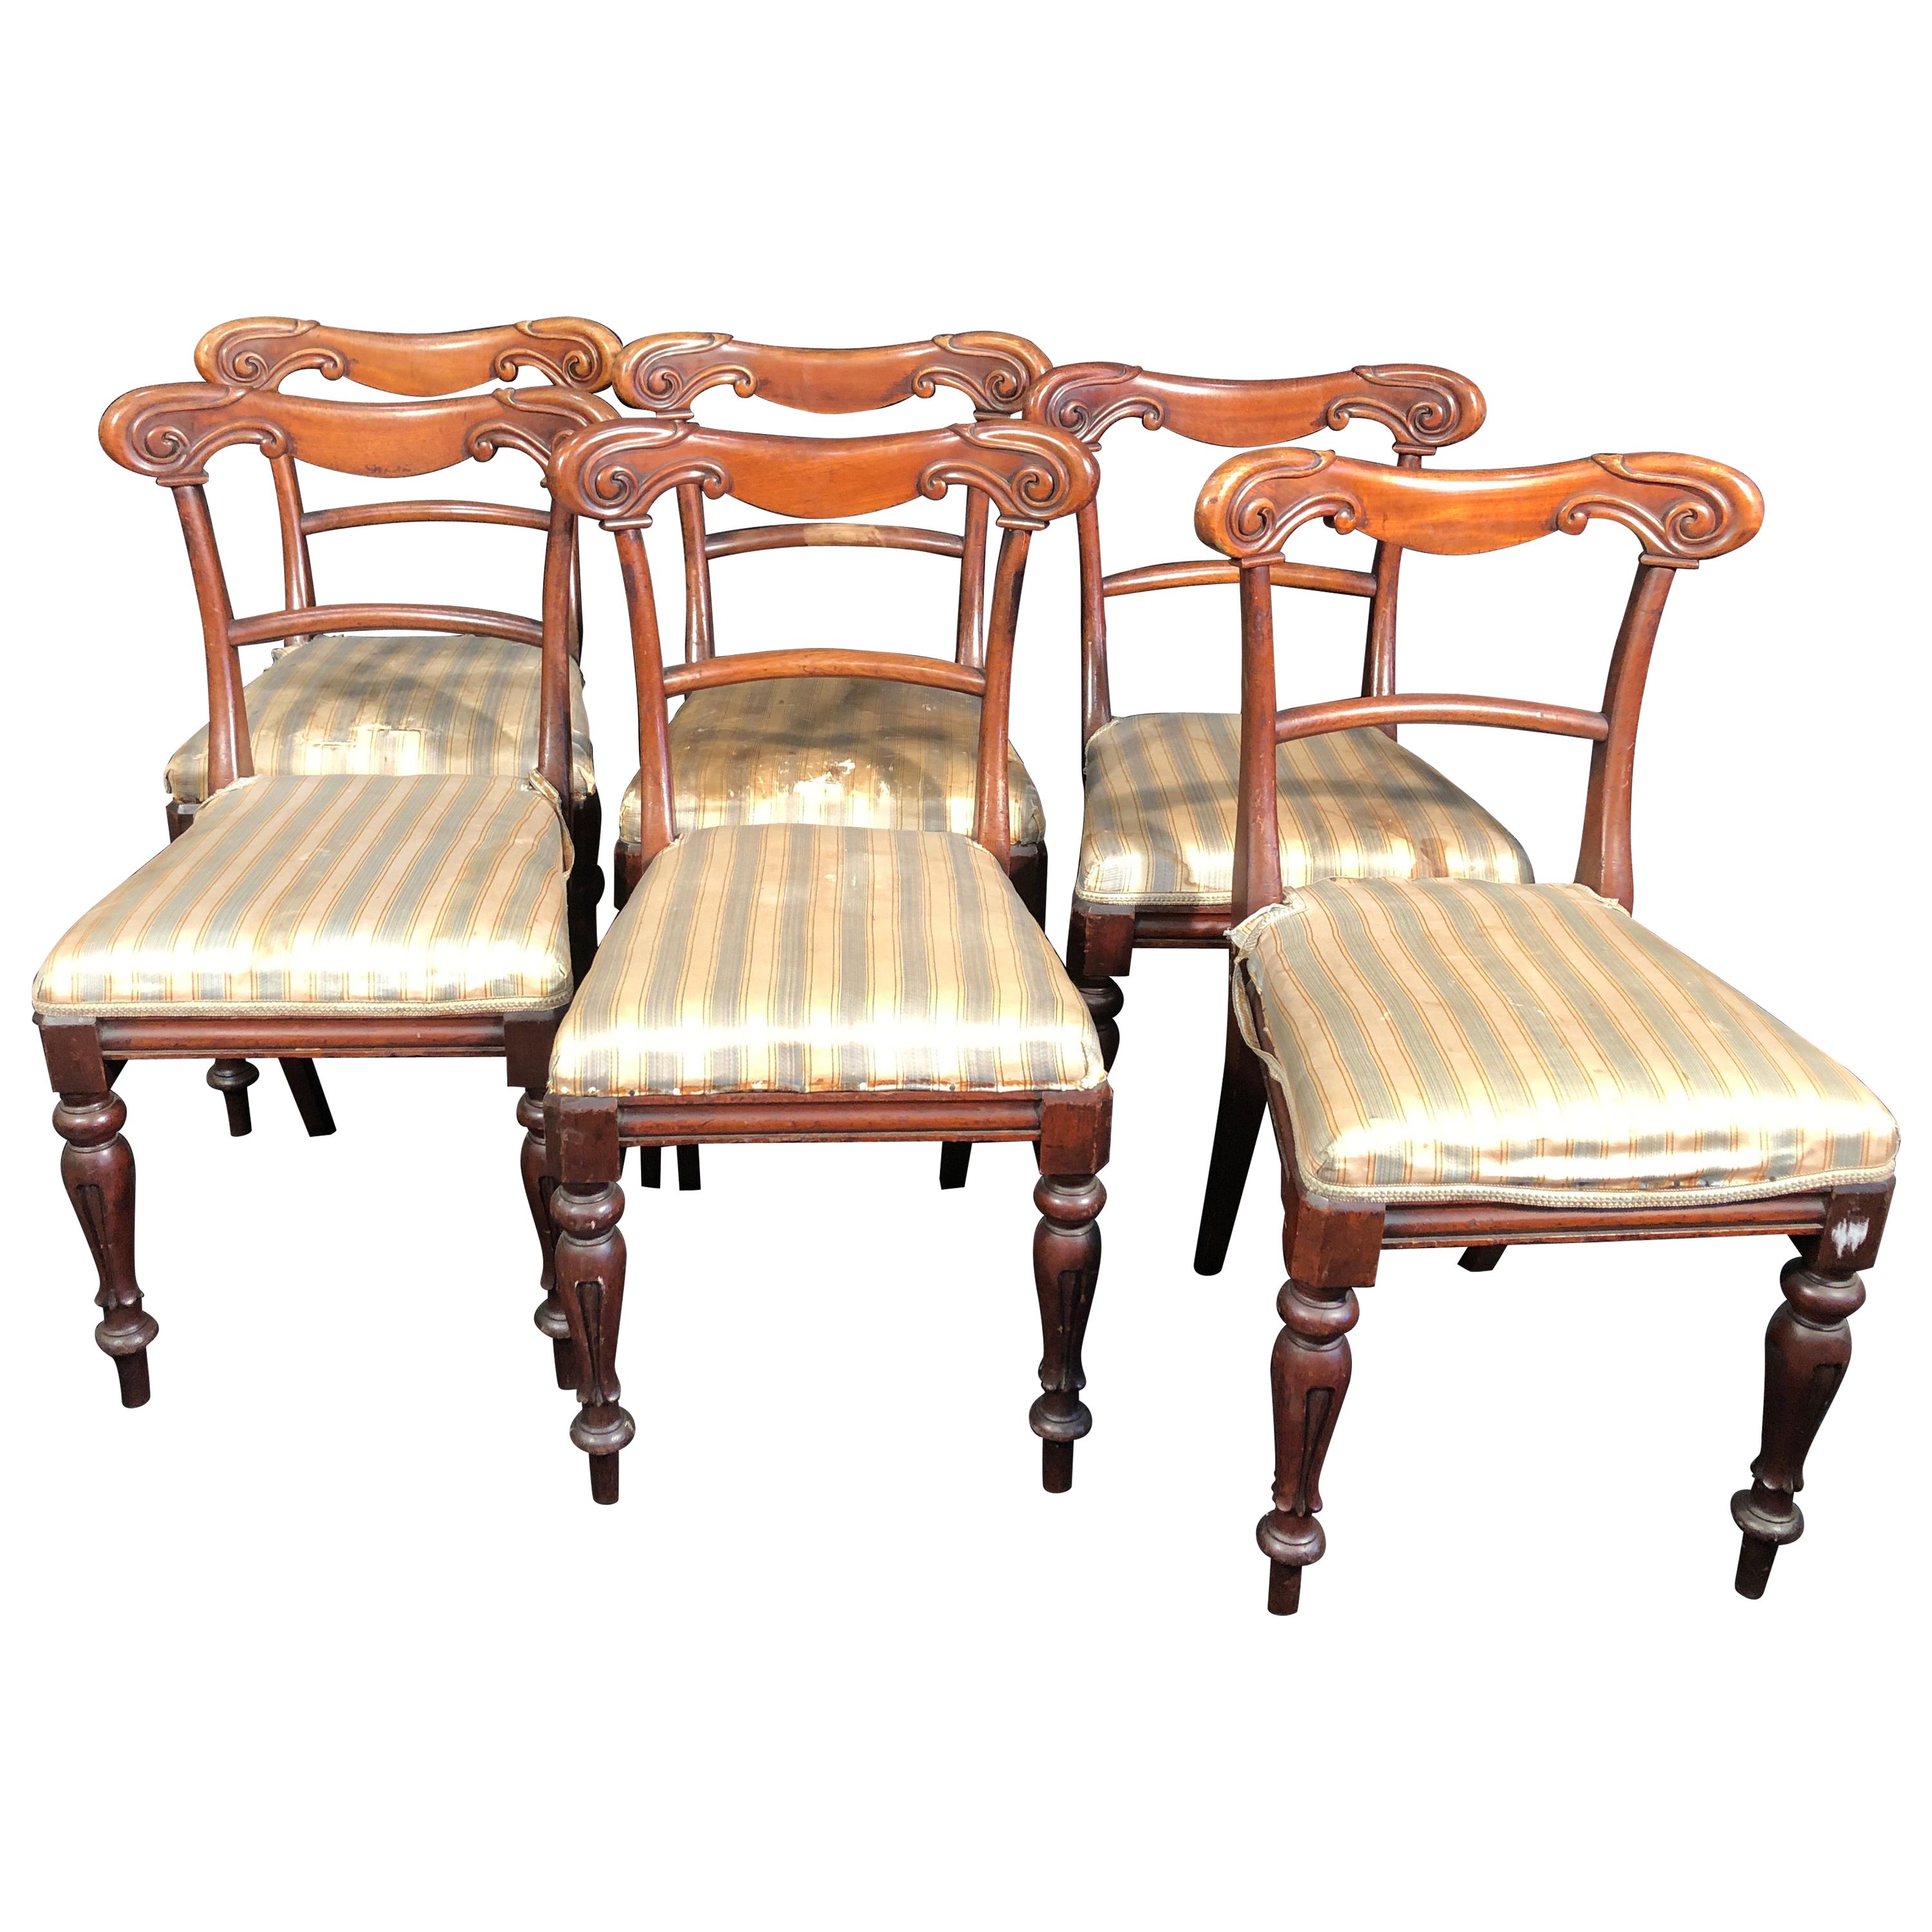 19th Century Regency Mahogany Chairs, 1830s